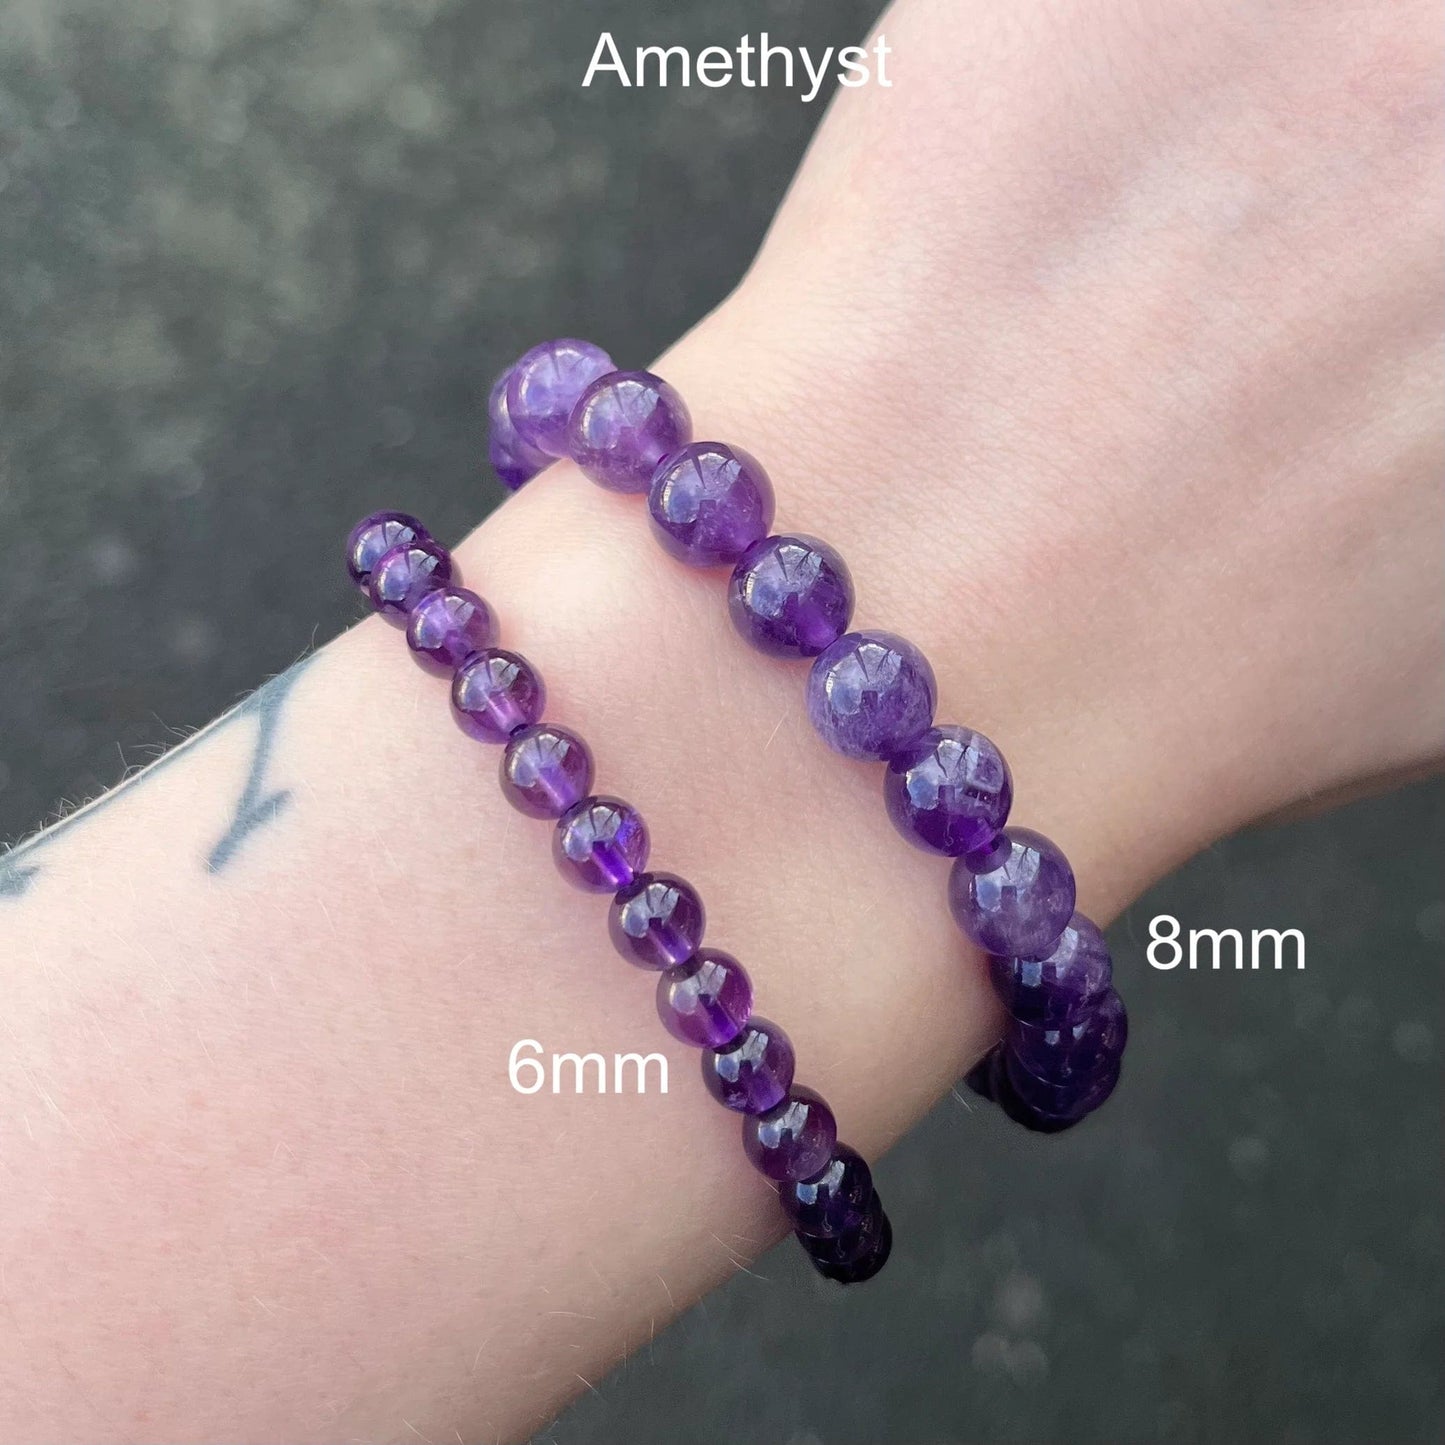 Amethyst - elastic bracelet in worked spheres